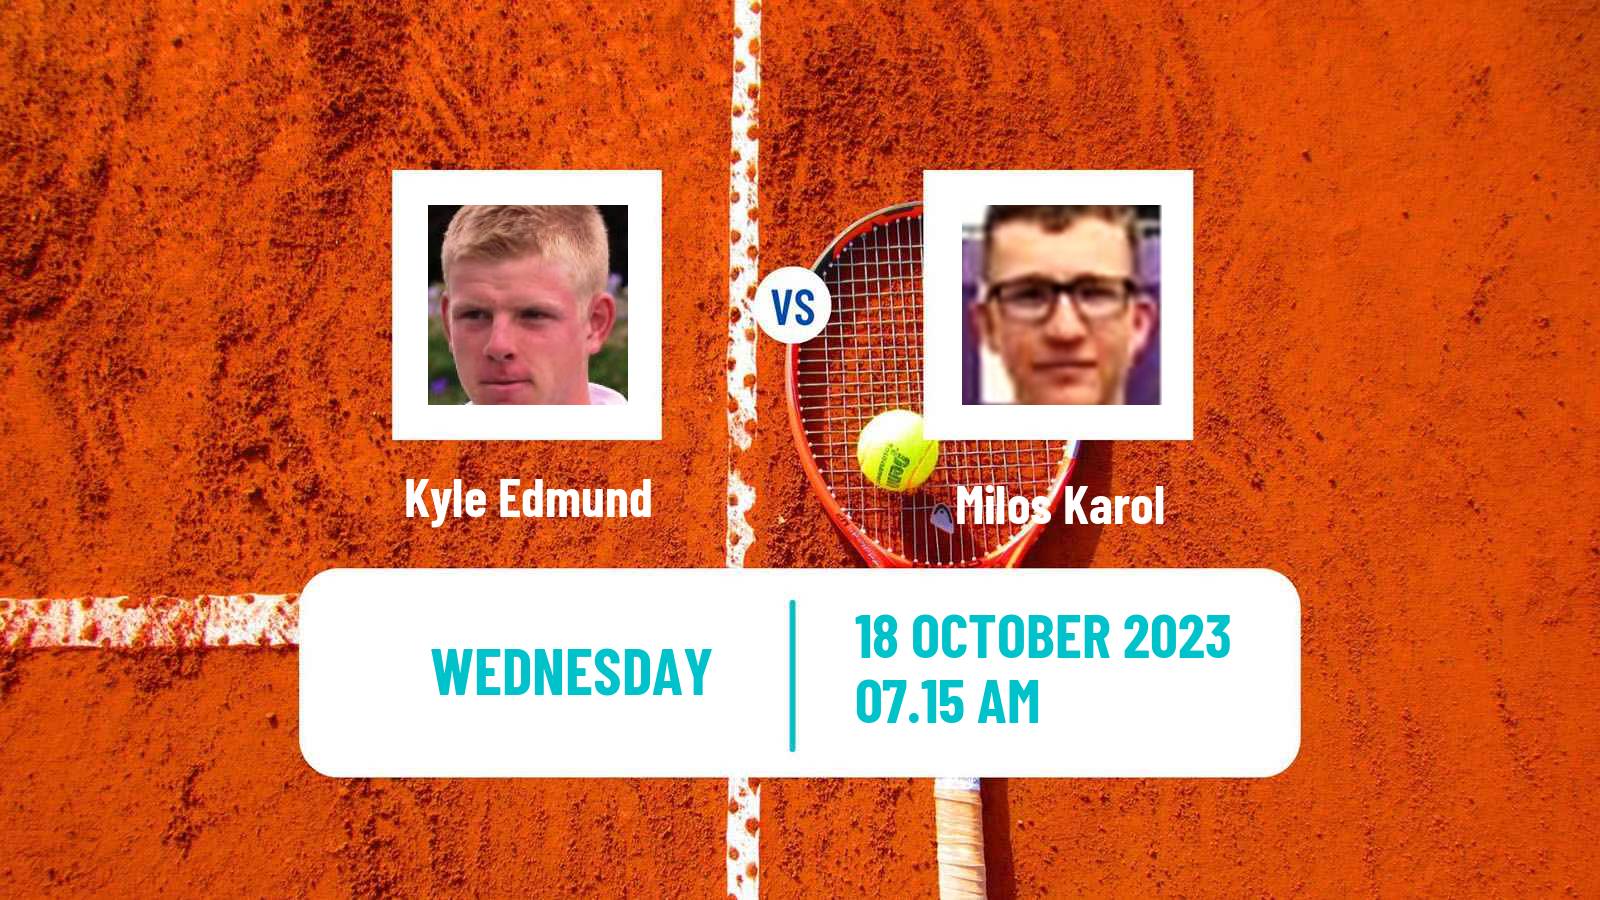 Tennis ITF M25 Edgbaston Men Kyle Edmund - Milos Karol